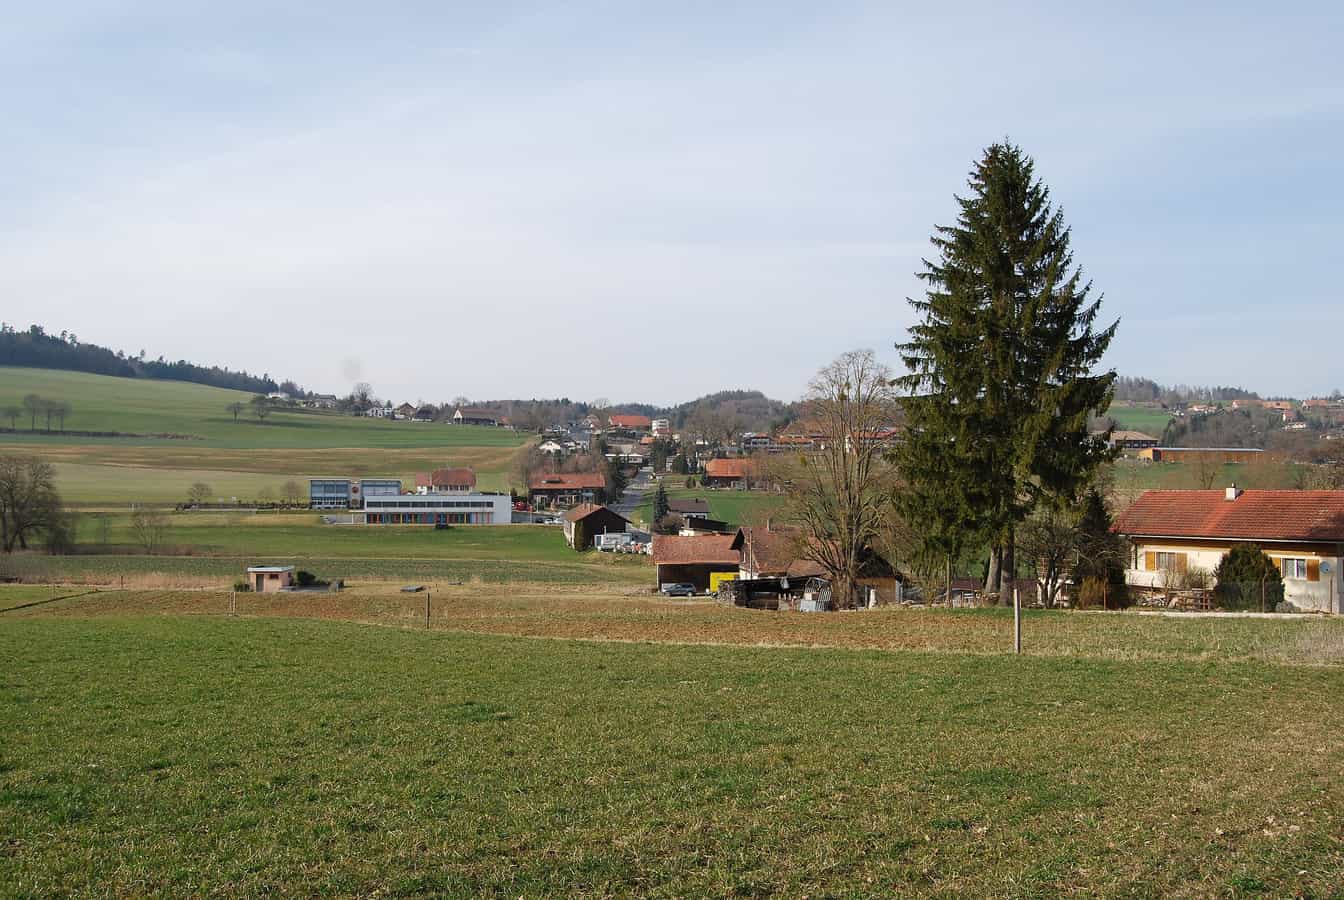 Lossy, municipality La Sonnaz, canton of Fribourg, Switzerland